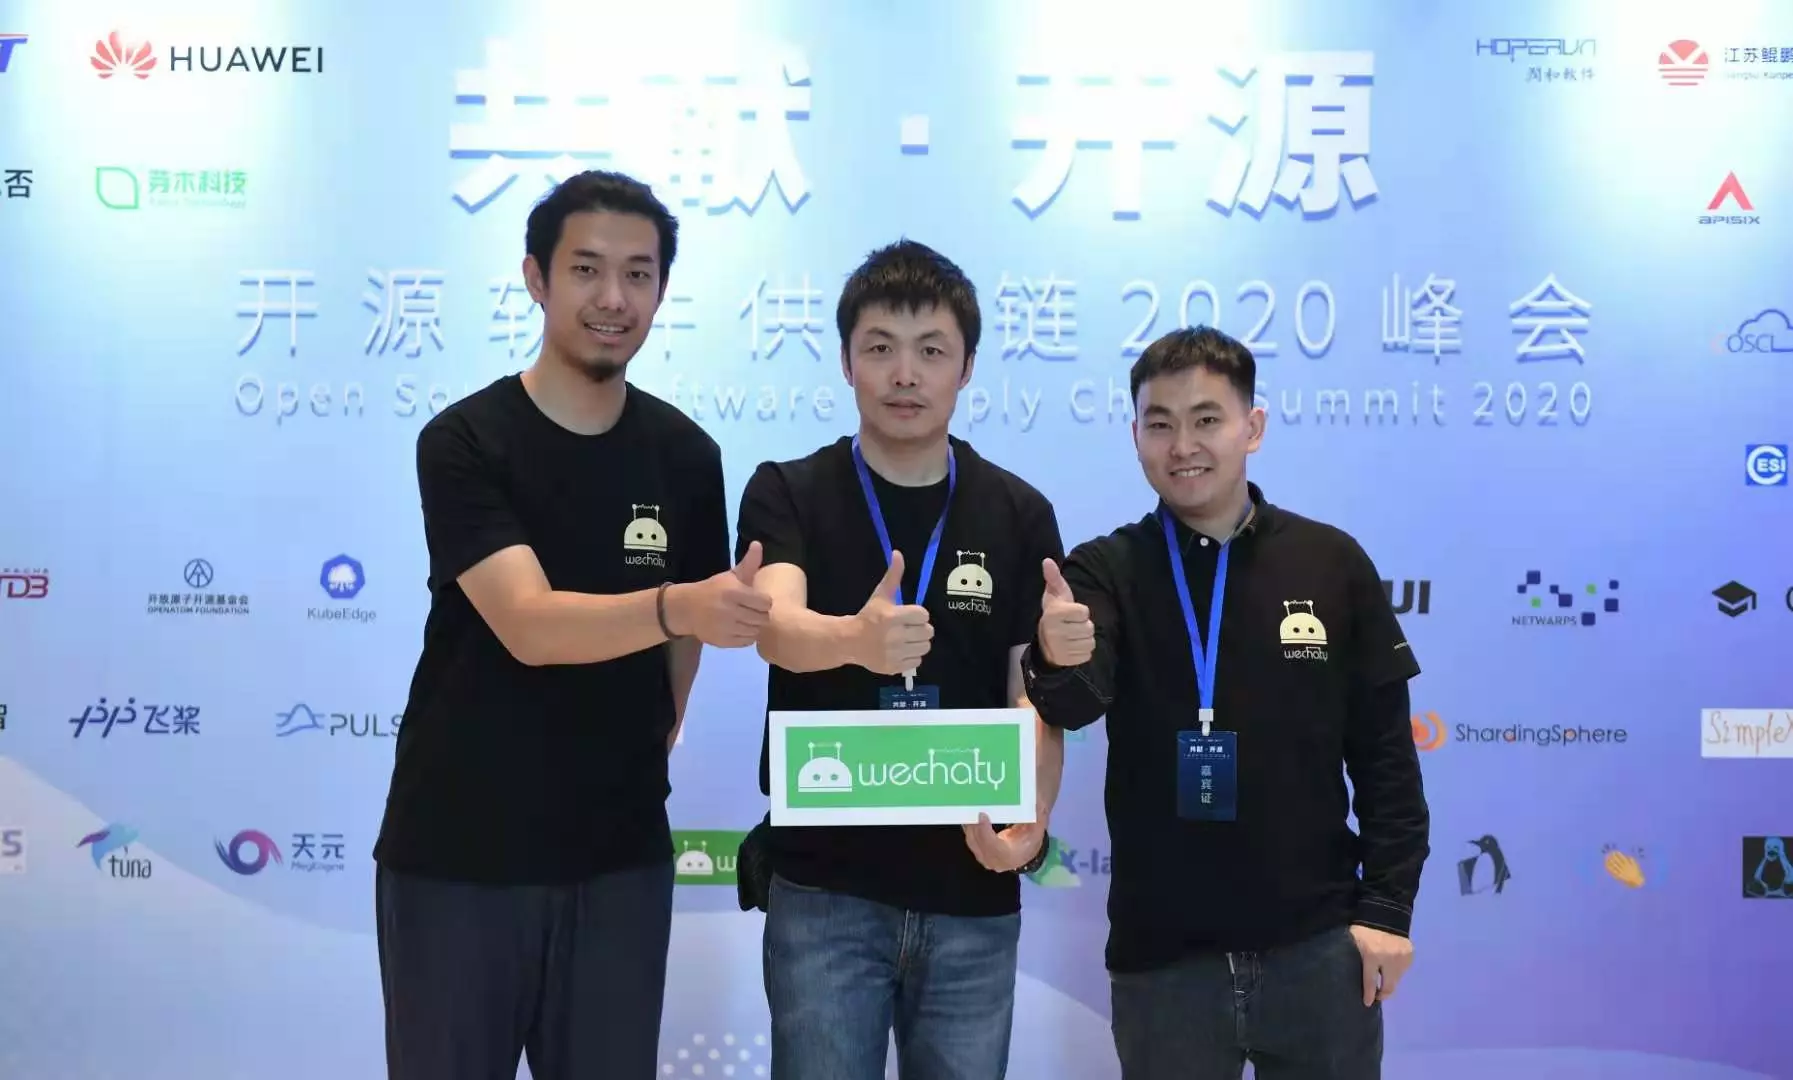 Python-Wechaty 南京开源峰会之旅